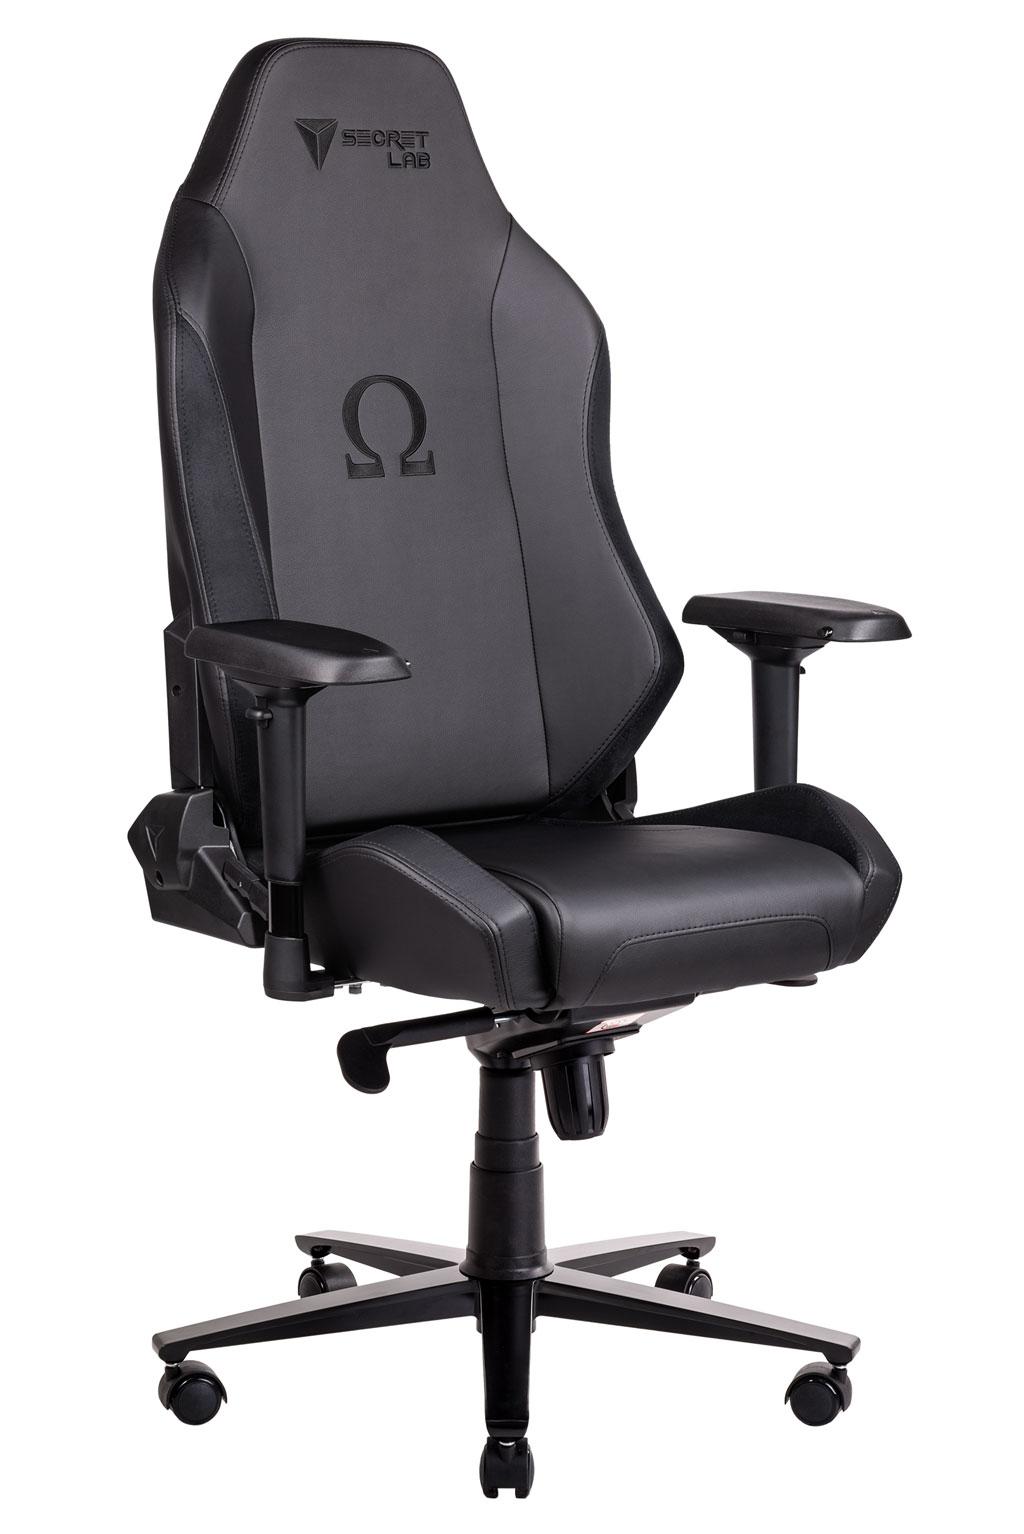 Secretlab presenta sus sillas gaming TITAN y OMEGA en color negro